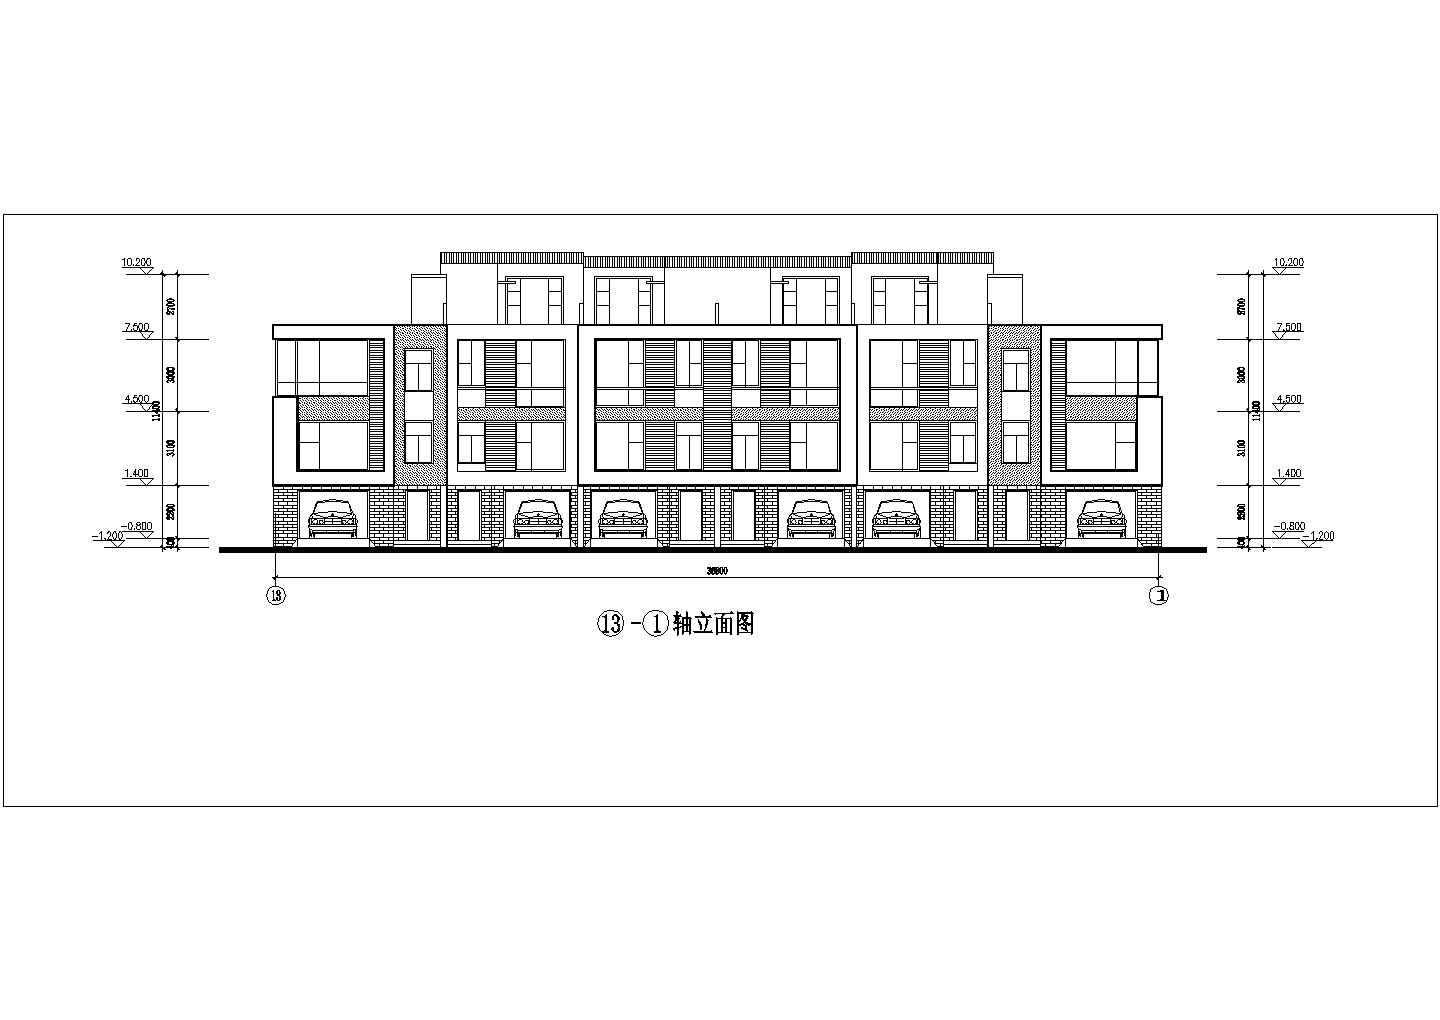 上海某高档综合小区建筑设计方案及总平图